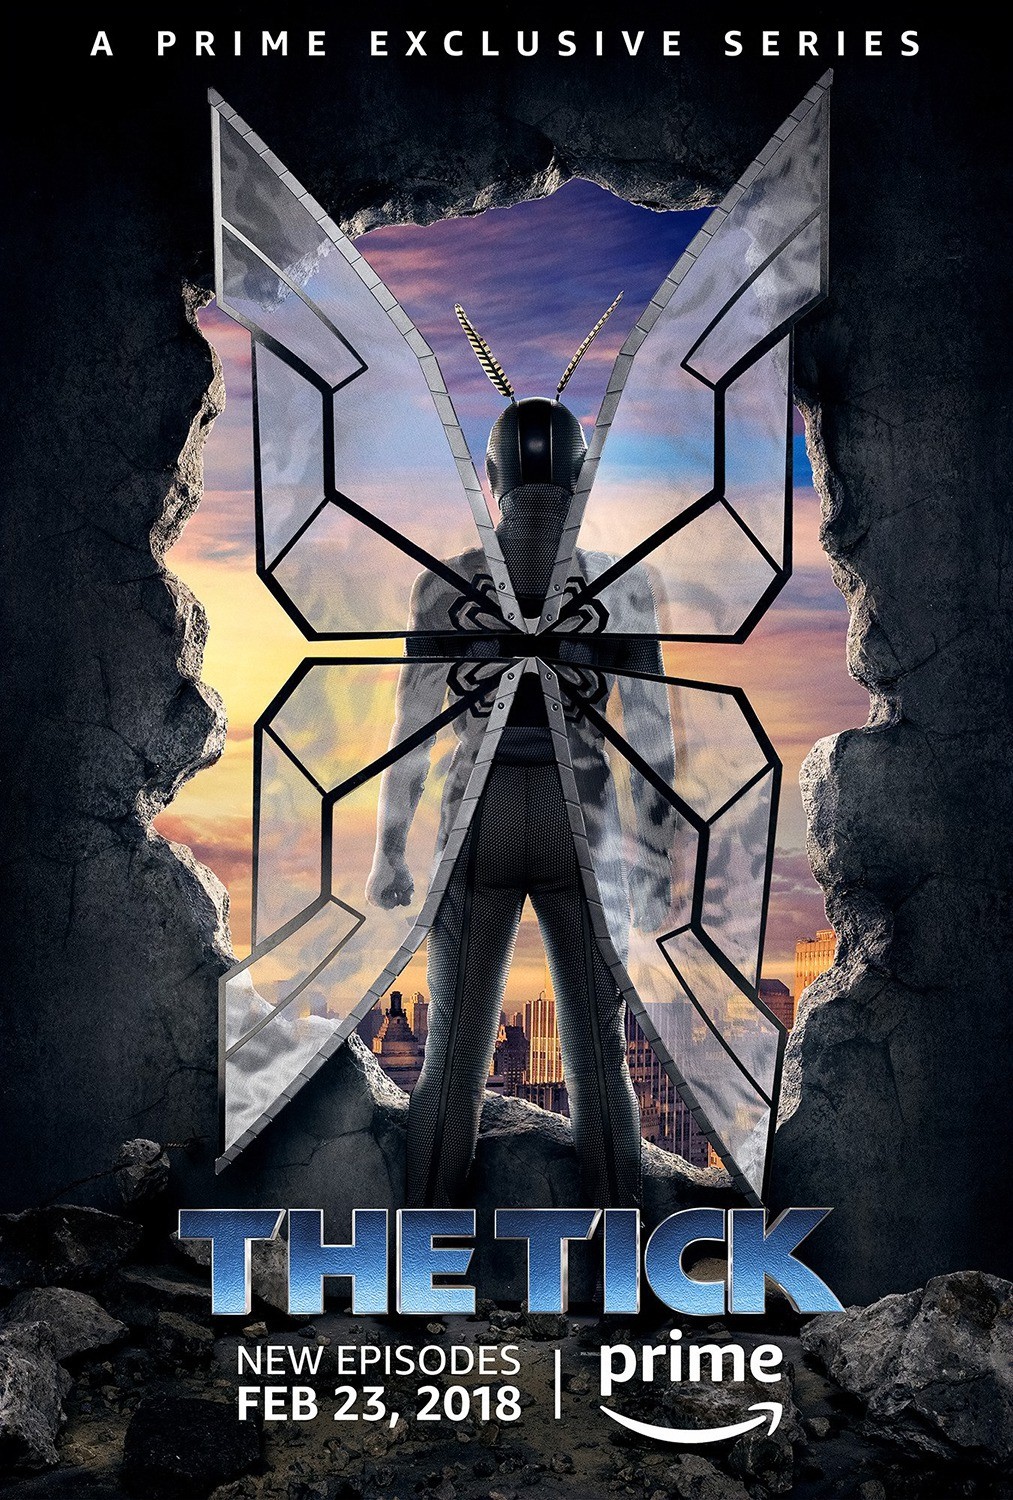 Тик / The Tick